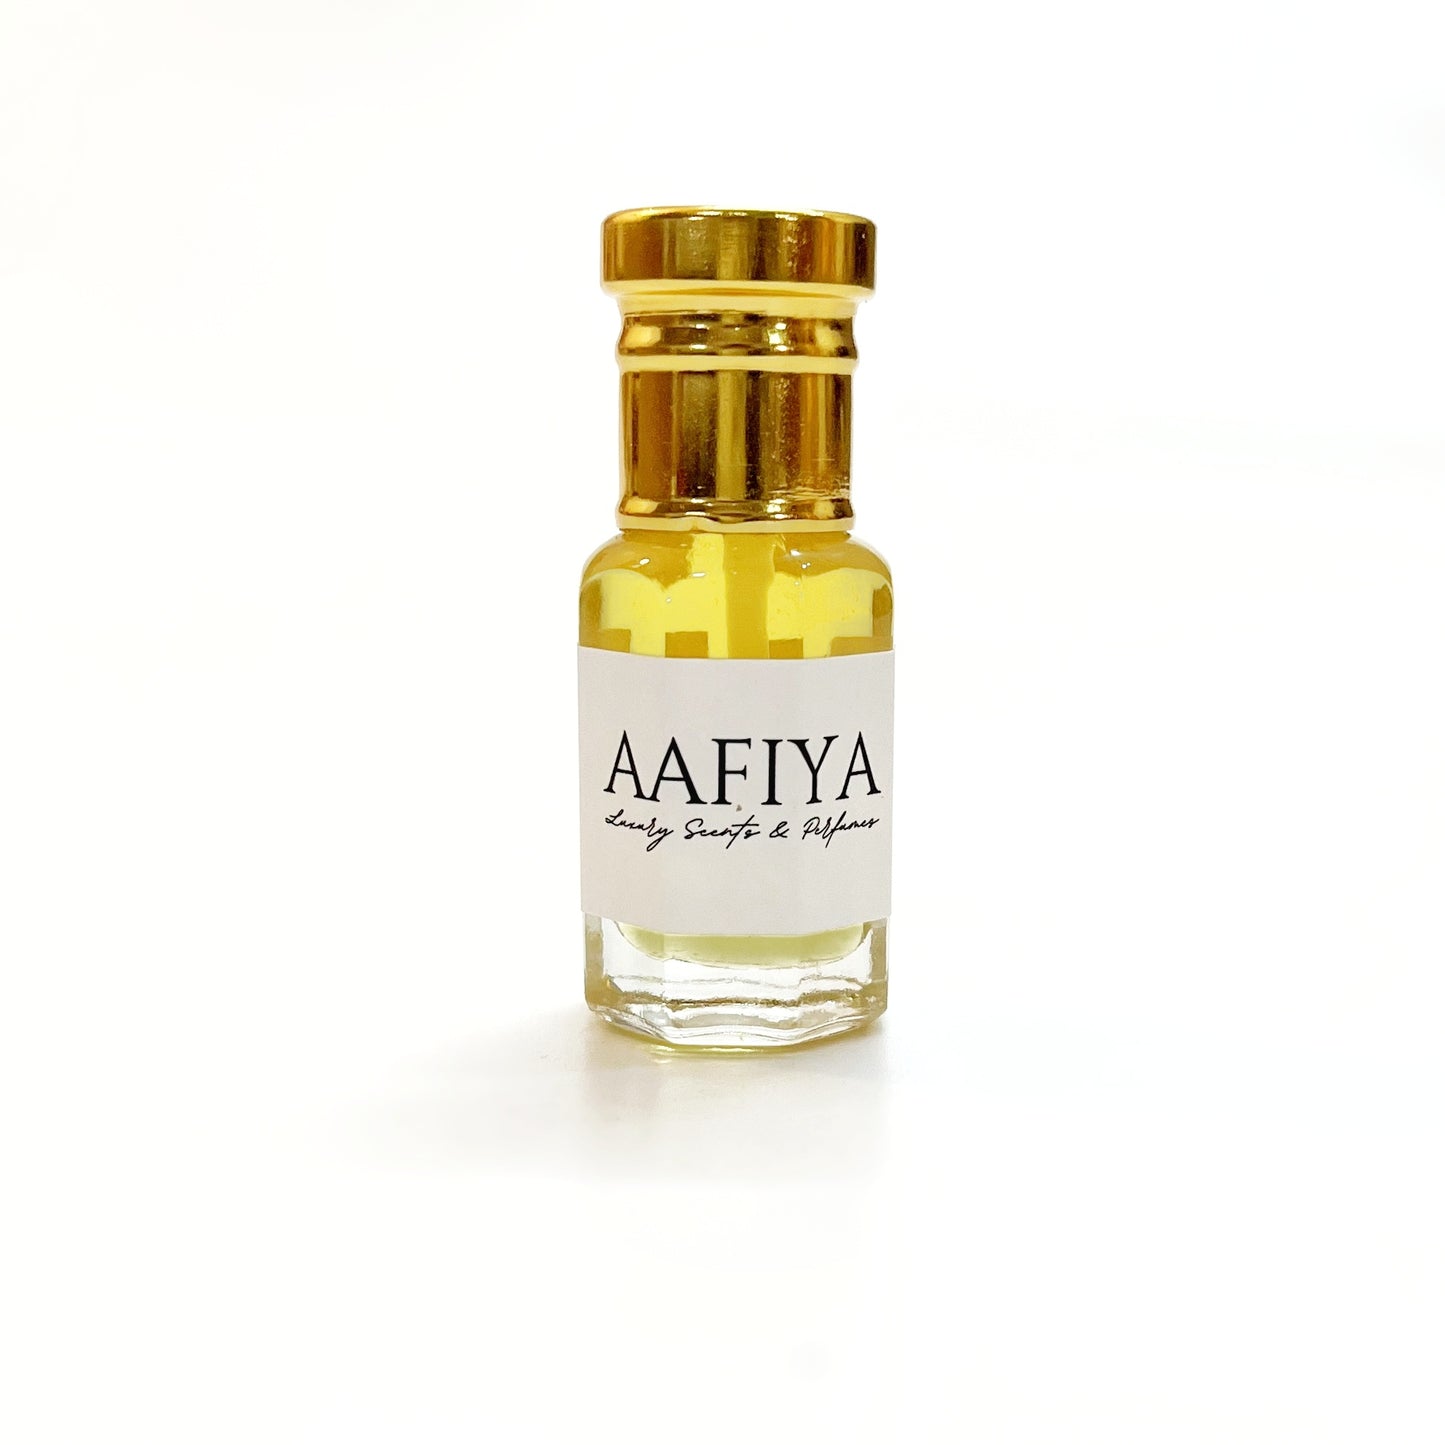 Ombre Wood Aafiya Luxury Scents & Perfumes